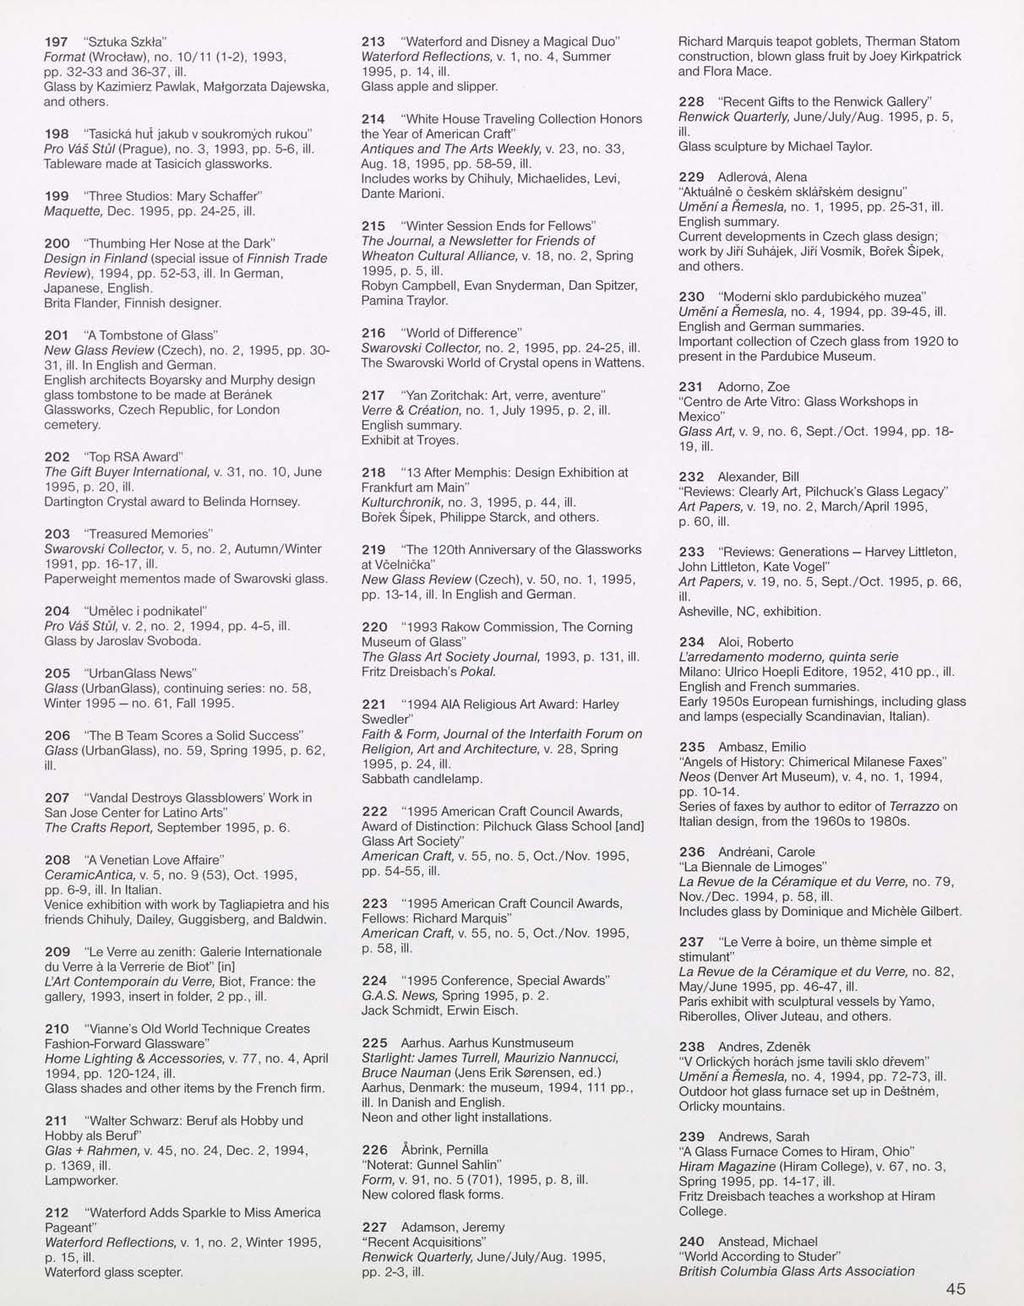 197 "Sztuka Szkla" Format (Wroclaw), no. 10/11 (1-2), 1993, pp. 32-33 and 36-37, Glass by Kazimierz Pawlak, Matgorzata Dajewska, and others.